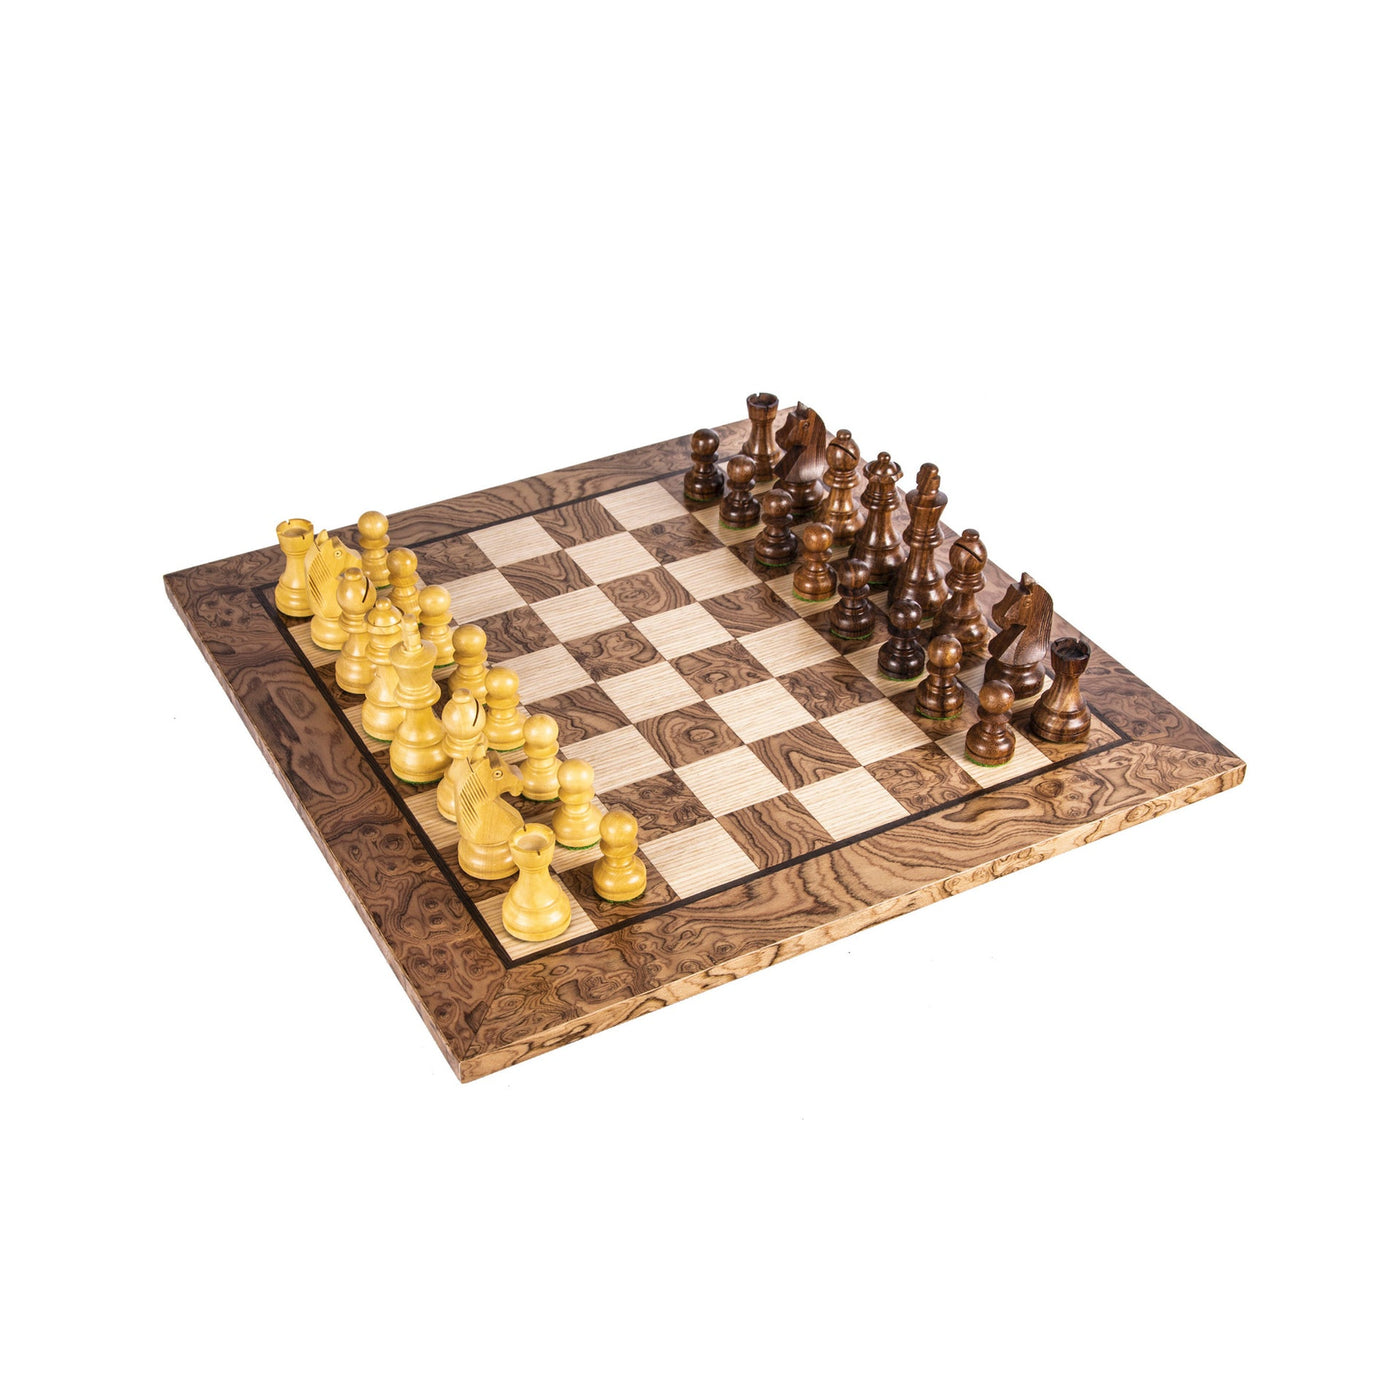 Wooden Chess set Walnut Burl Chessboard 34cm with Staunton Chessmen